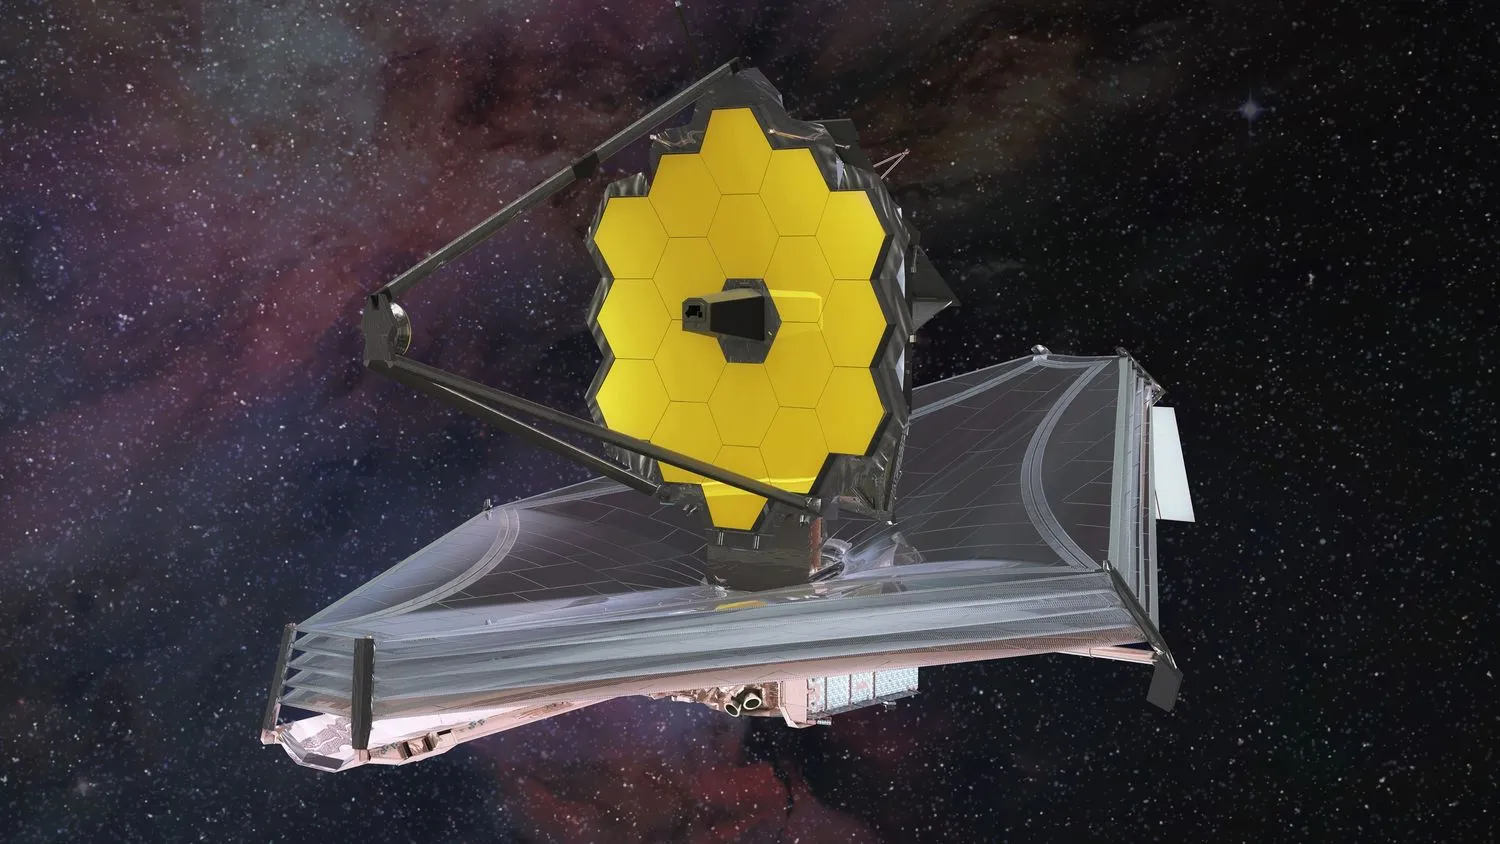 Eine künstlerische Darstellung des James Webb Space Telescope. Sein goldener Spiegel ist auf dem silbernen Sonnenschild zu sehen, der im Weltraum schwebt.